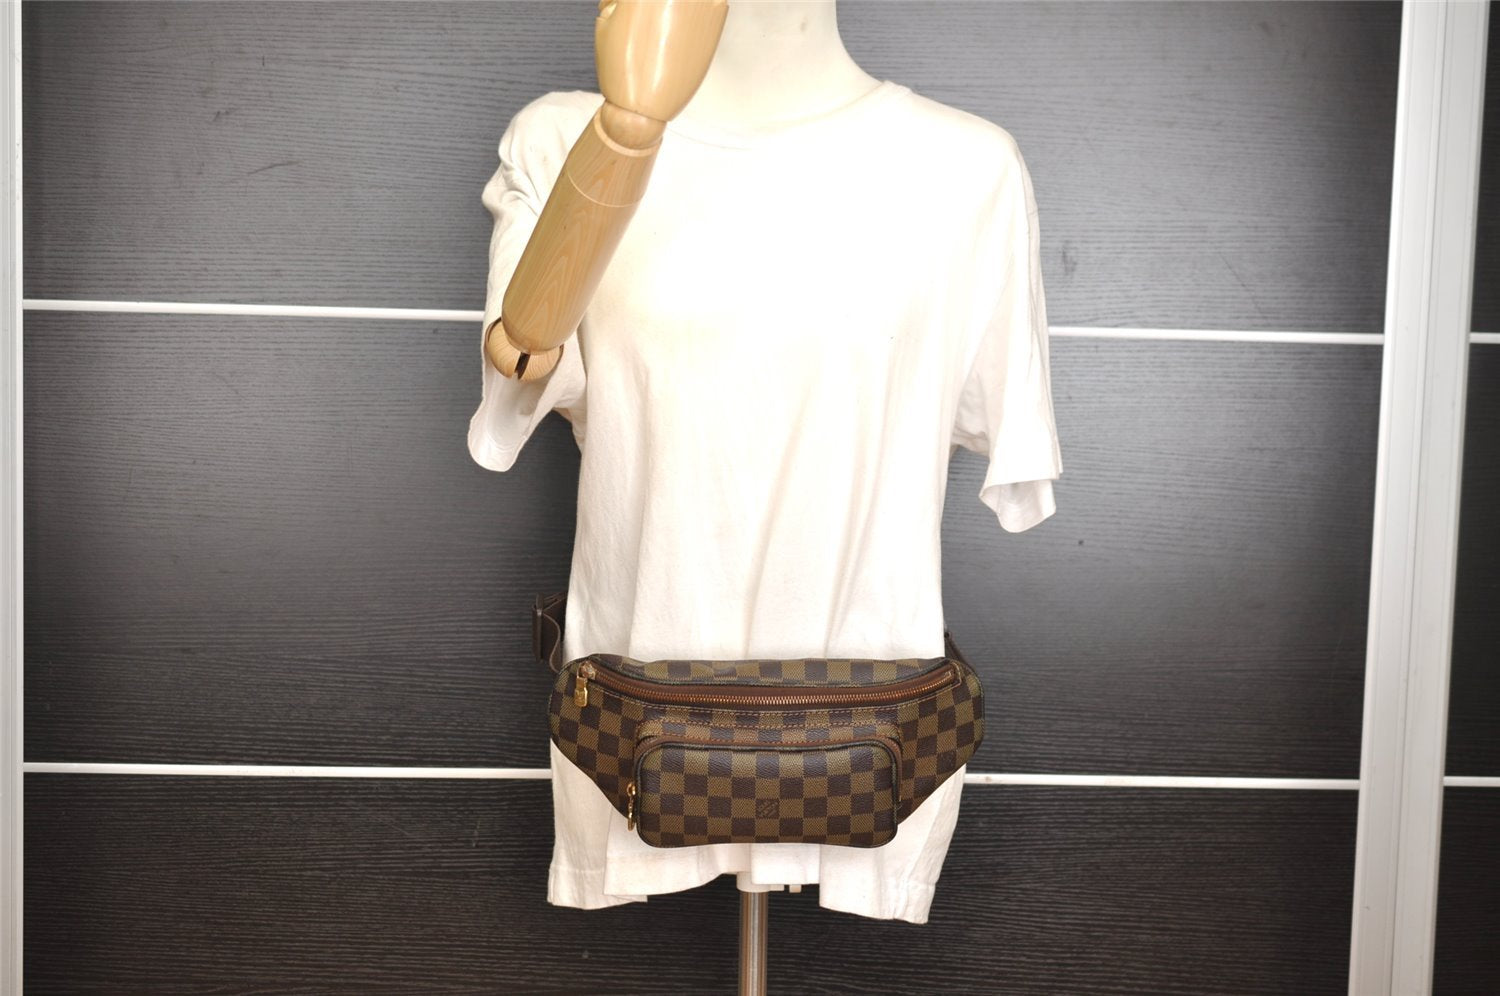 Authentic Louis Vuitton Damier Melville Waist Body Bag Purse N51172 LV 0970J